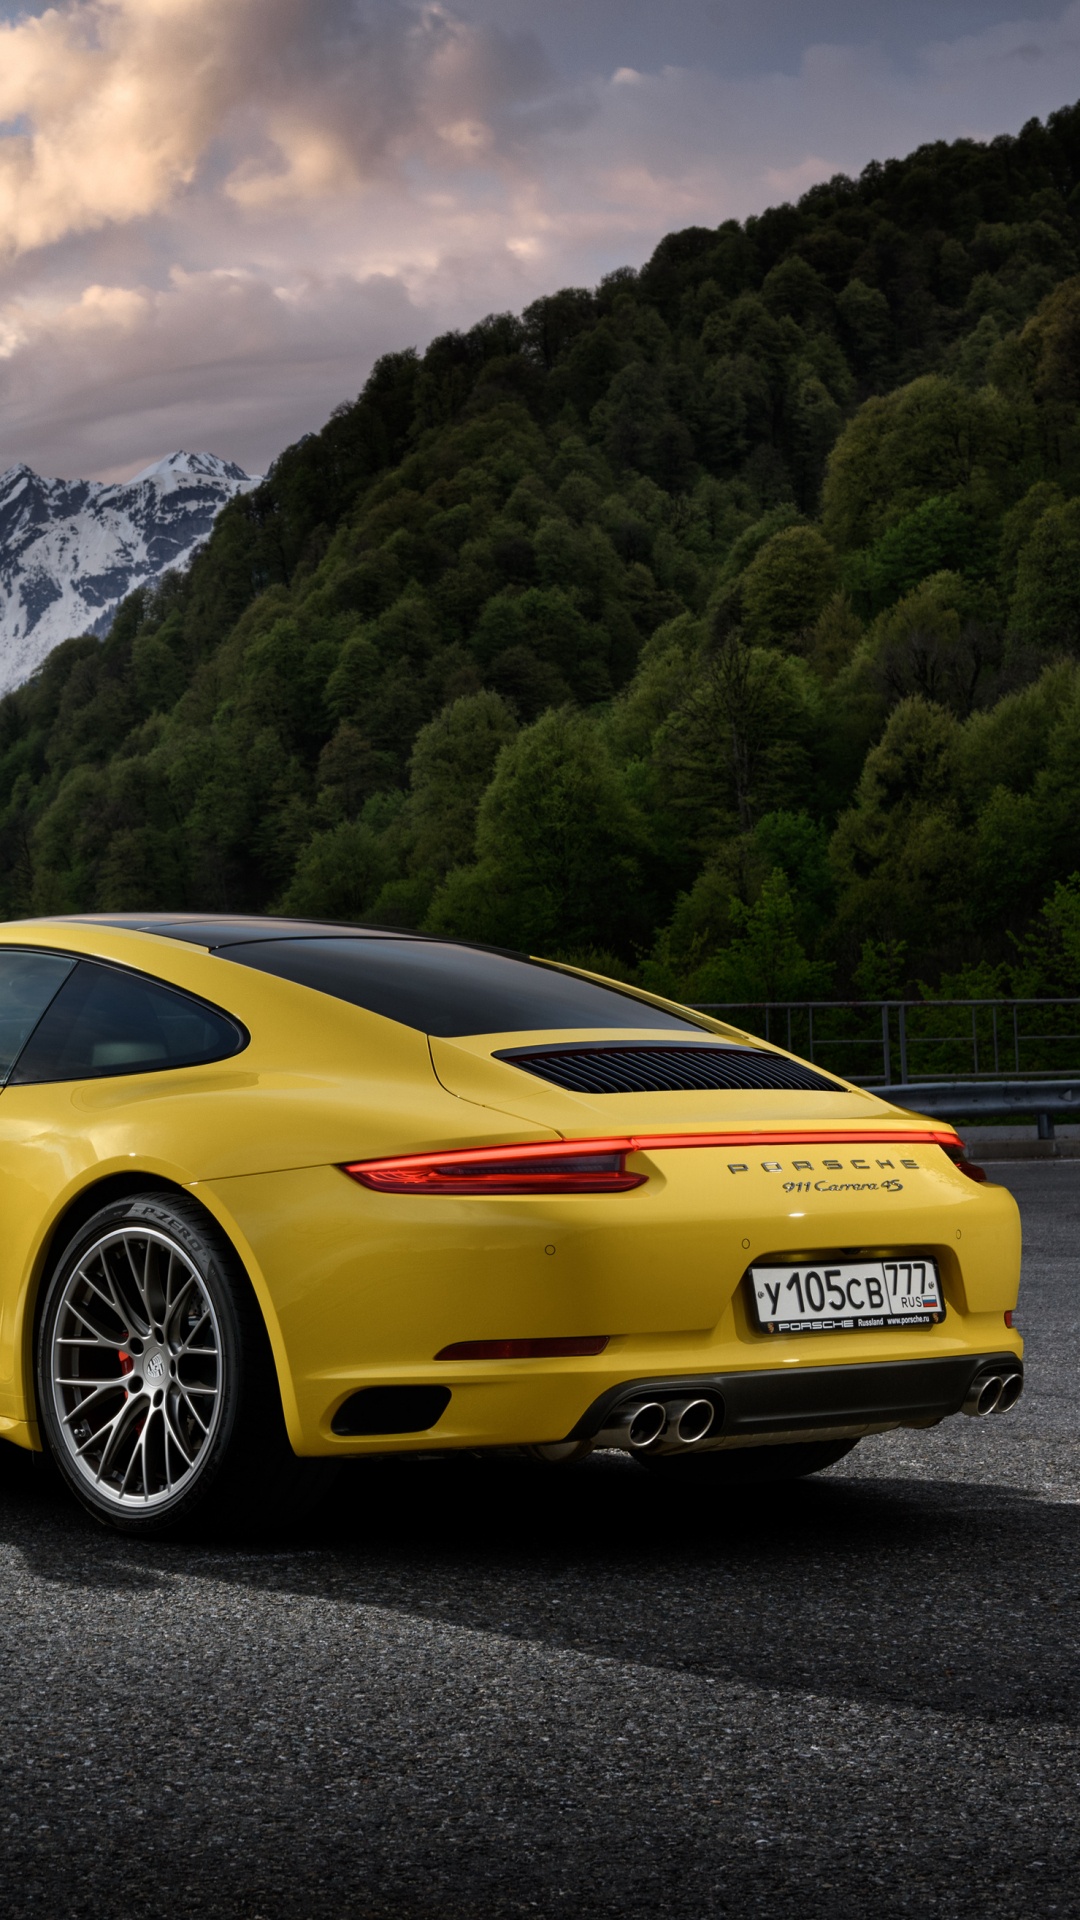 Gelber Porsche 911 Auf Der Straße in Der Nähe Des Berges Tagsüber. Wallpaper in 1080x1920 Resolution